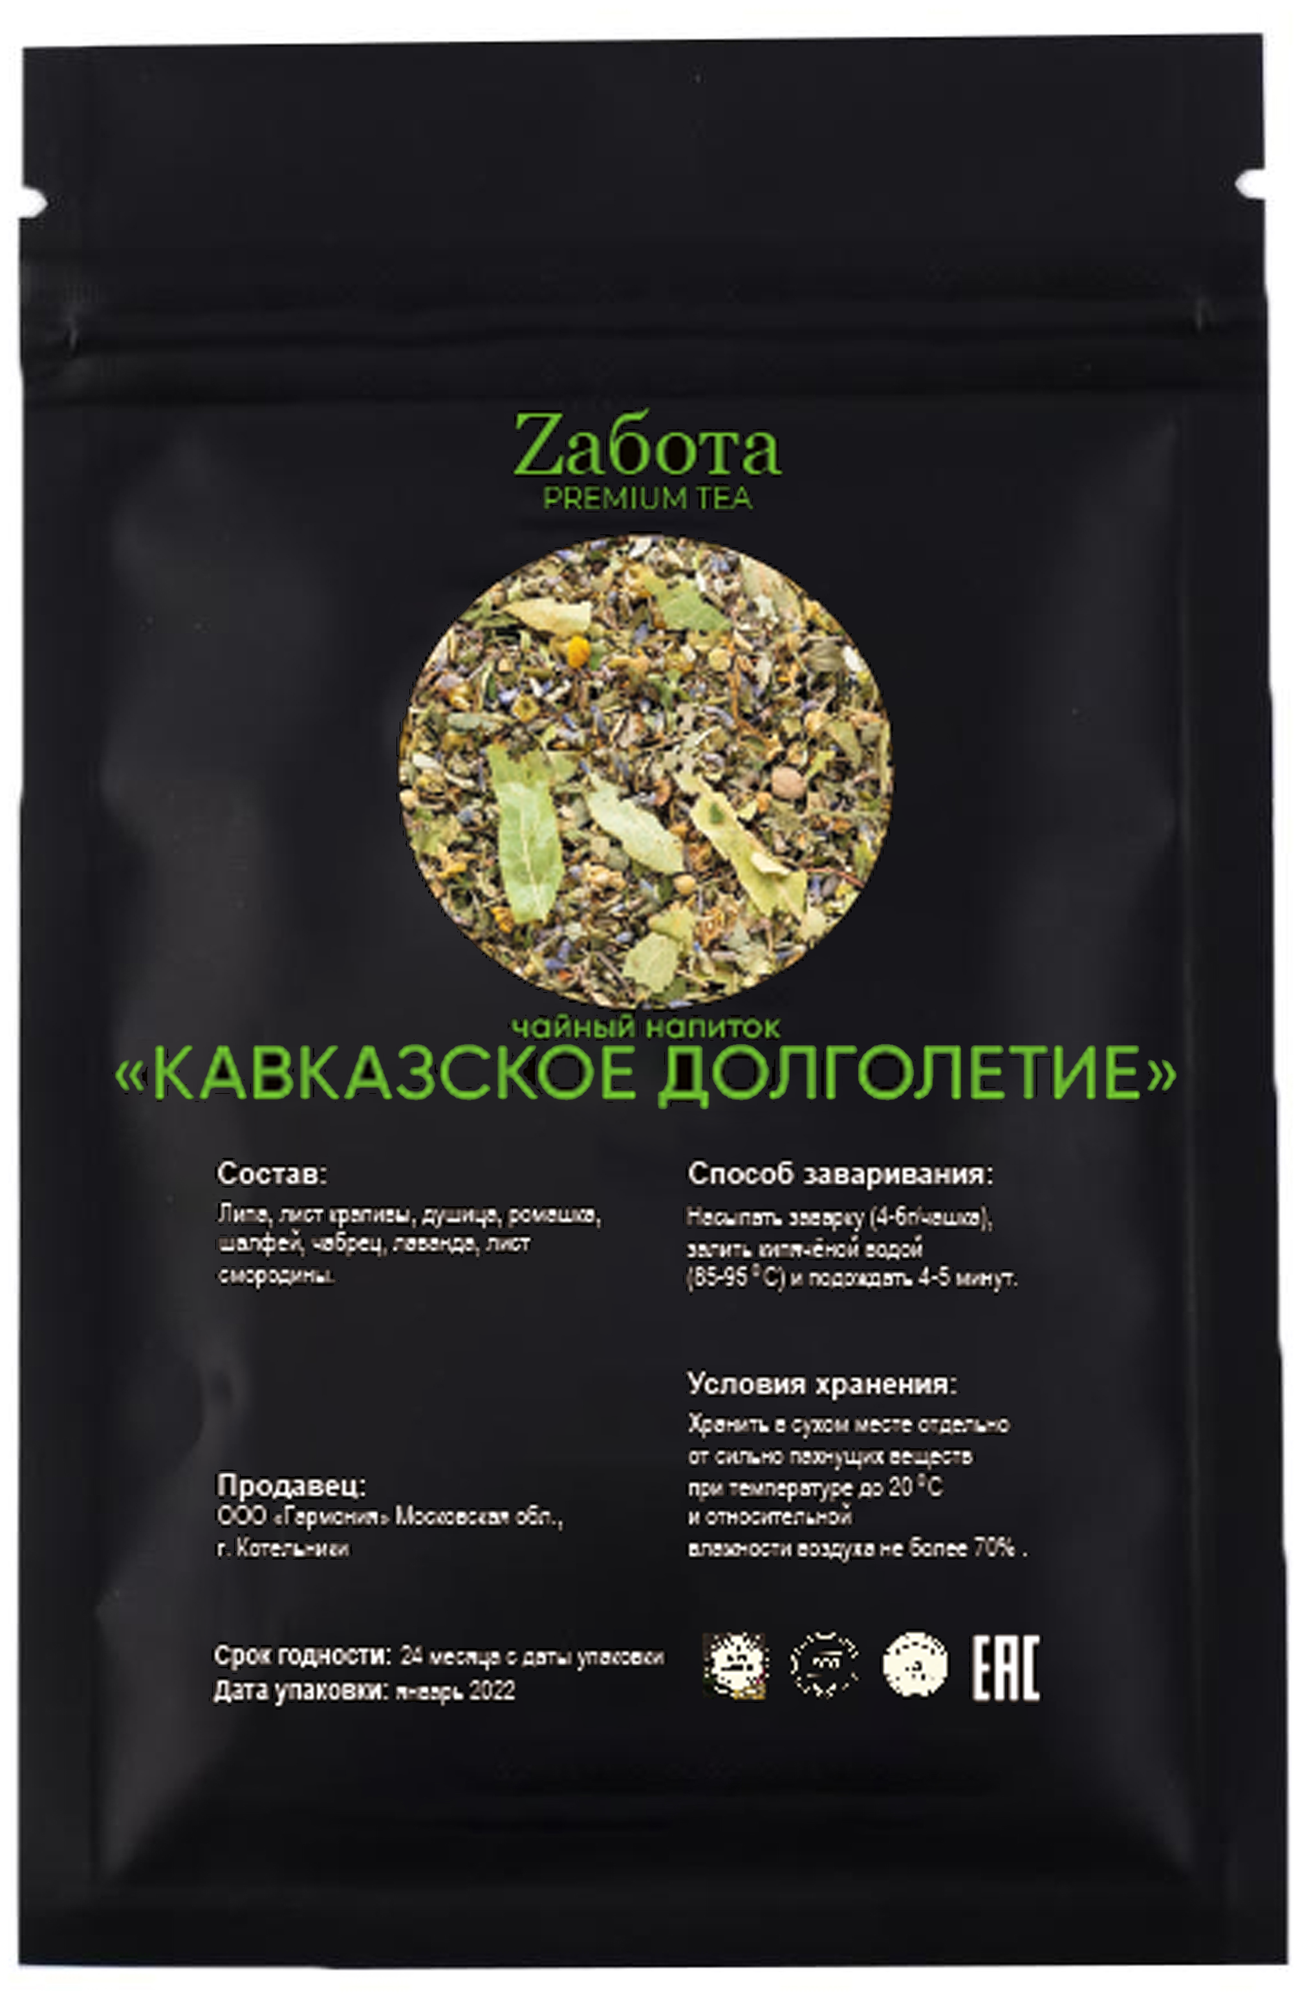 Чайный травяной напиток Кавказское долголетие Premium чай Zабота рассыпной травяной сбор для иммунитета подарок женщине мужчине 100 гр.